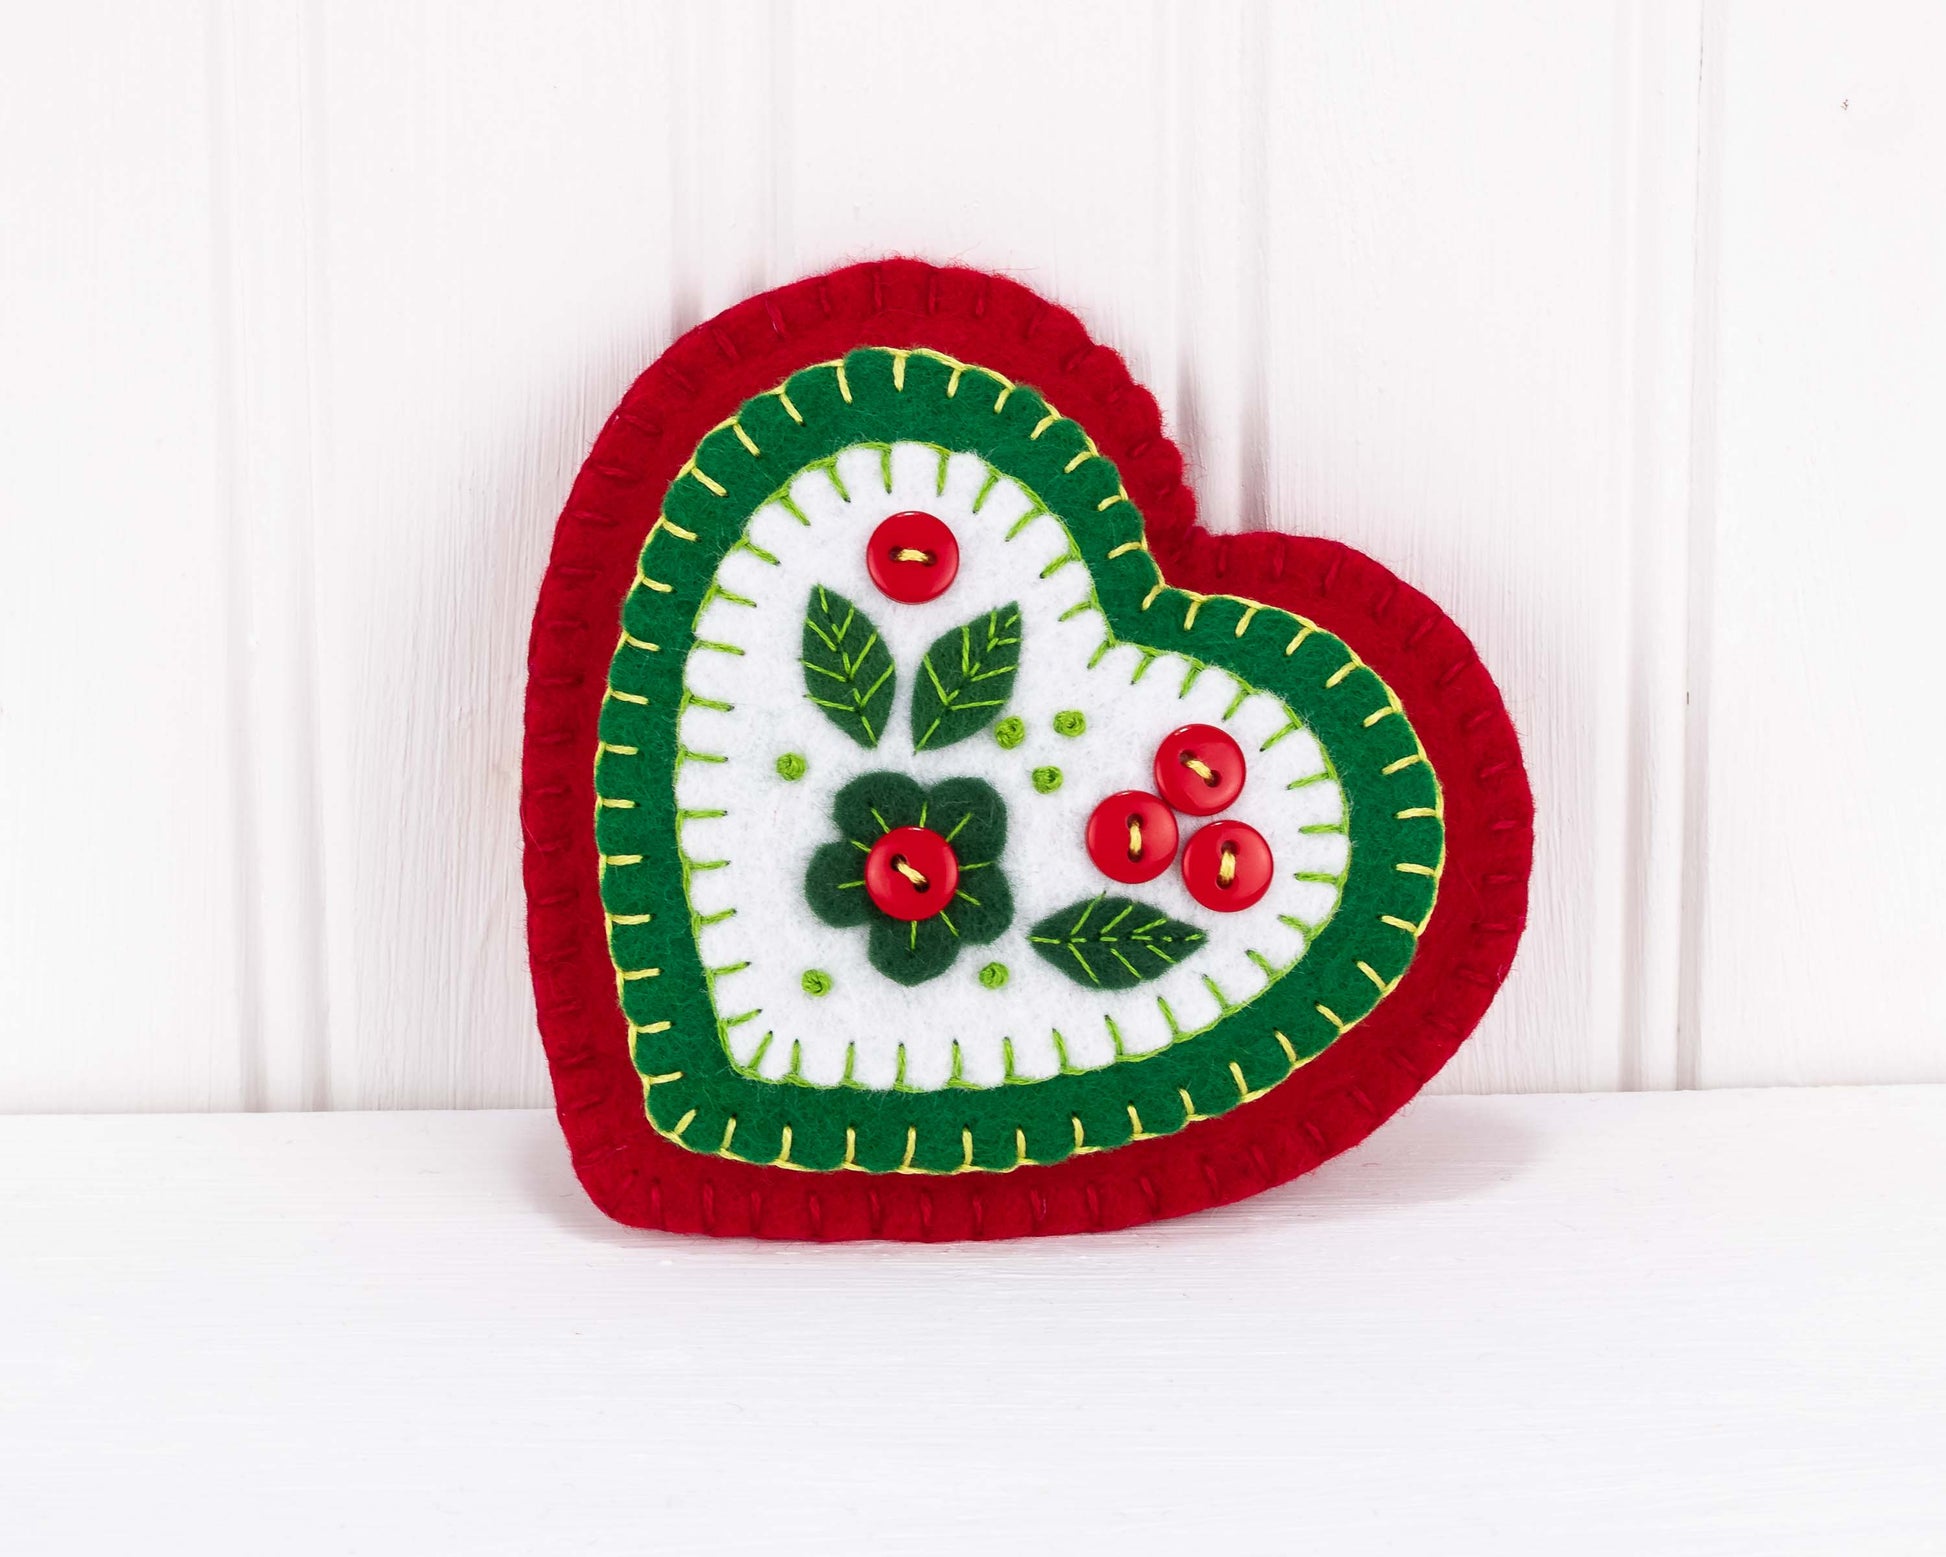 Modern Bouquet Heart Wool Felt Ornament Kit – Snuggly Monkey